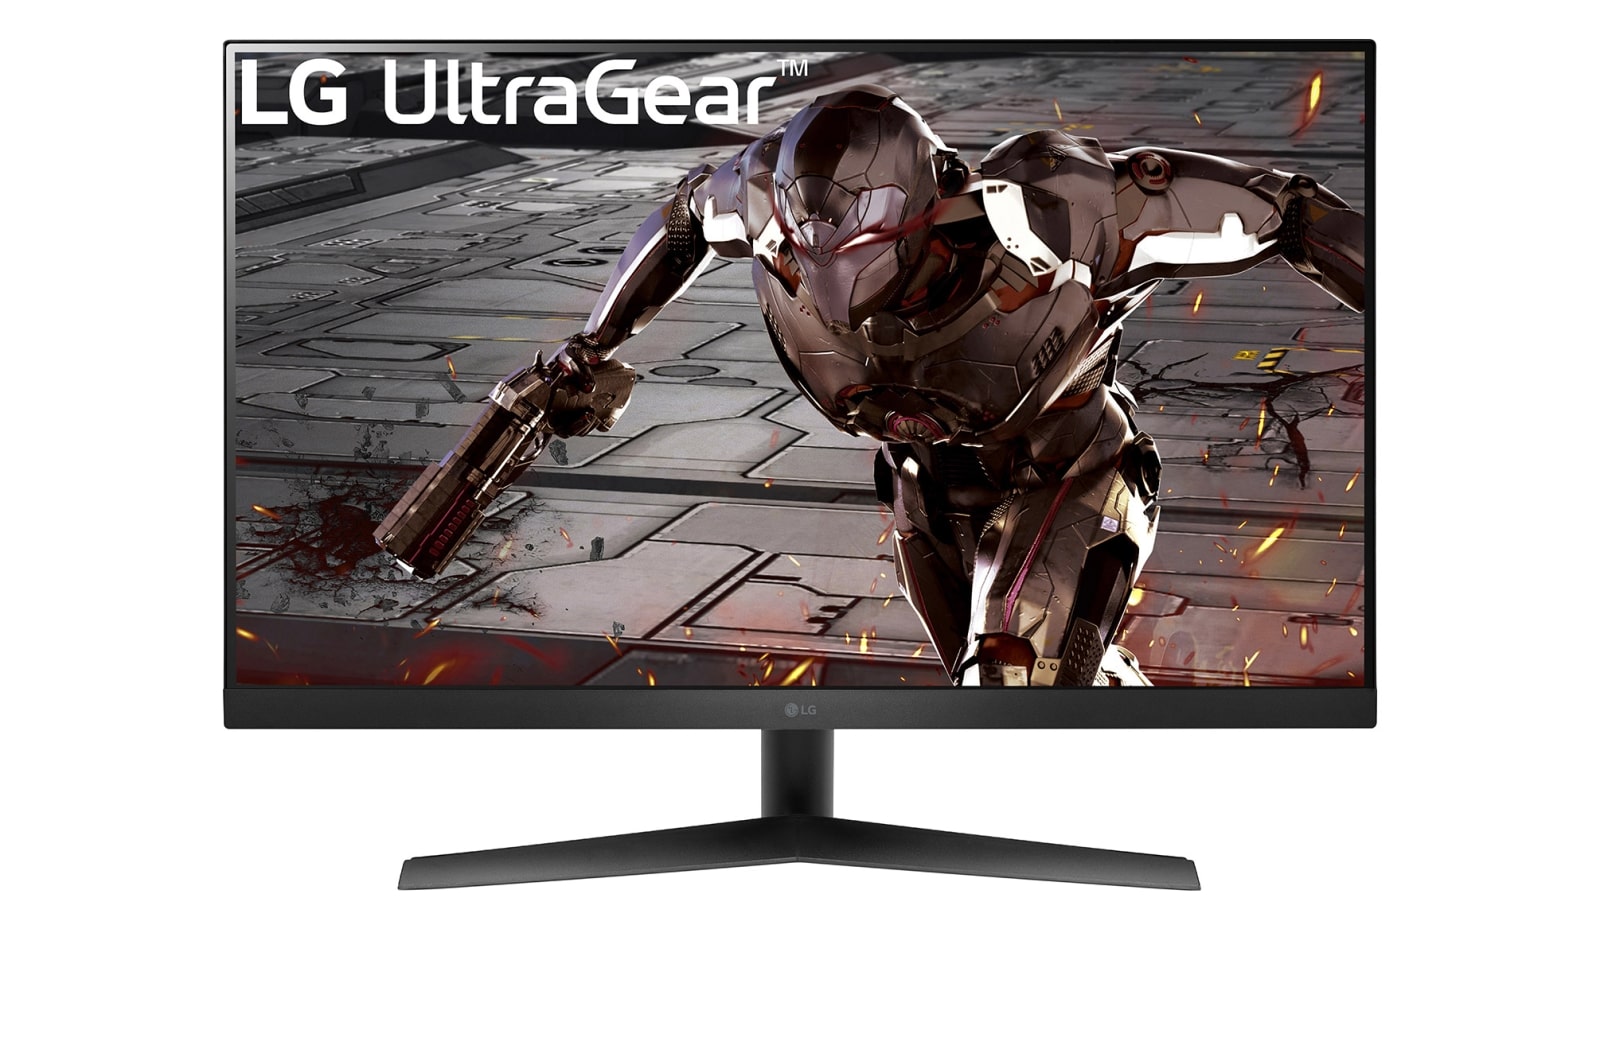 LG 31.5" Игровой монитор UltraGear™ Full HD с частотой обновления 165 Гц, режимом 1 ms MBR 1 и совместимостью с NVIDIA<sup>®</sup> G-SYNC<sup>®</sup>, 32GN50R-B